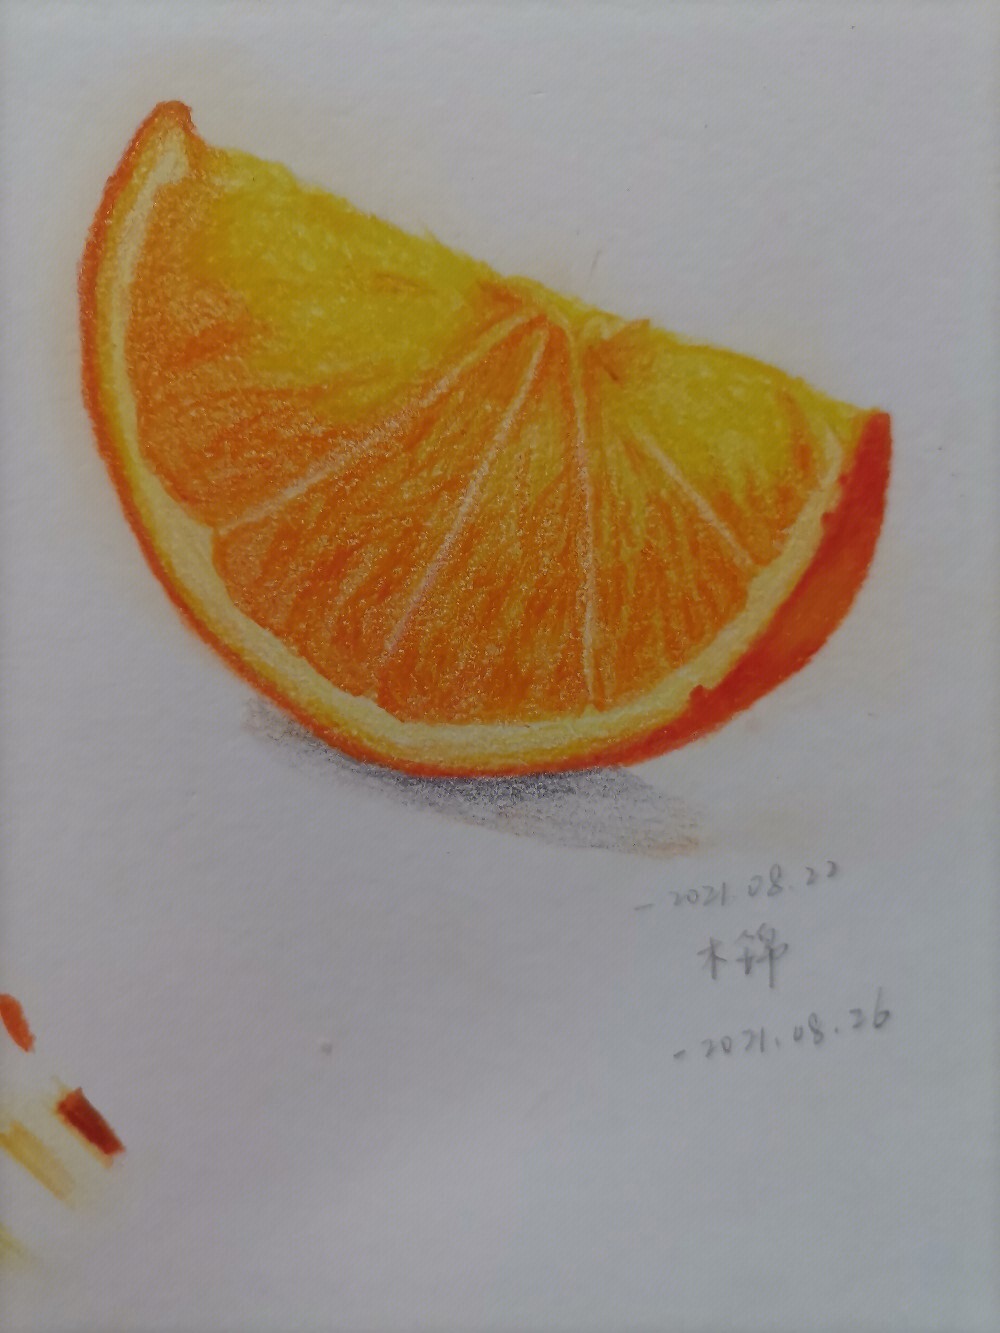 以橙子为主题的绘画图片